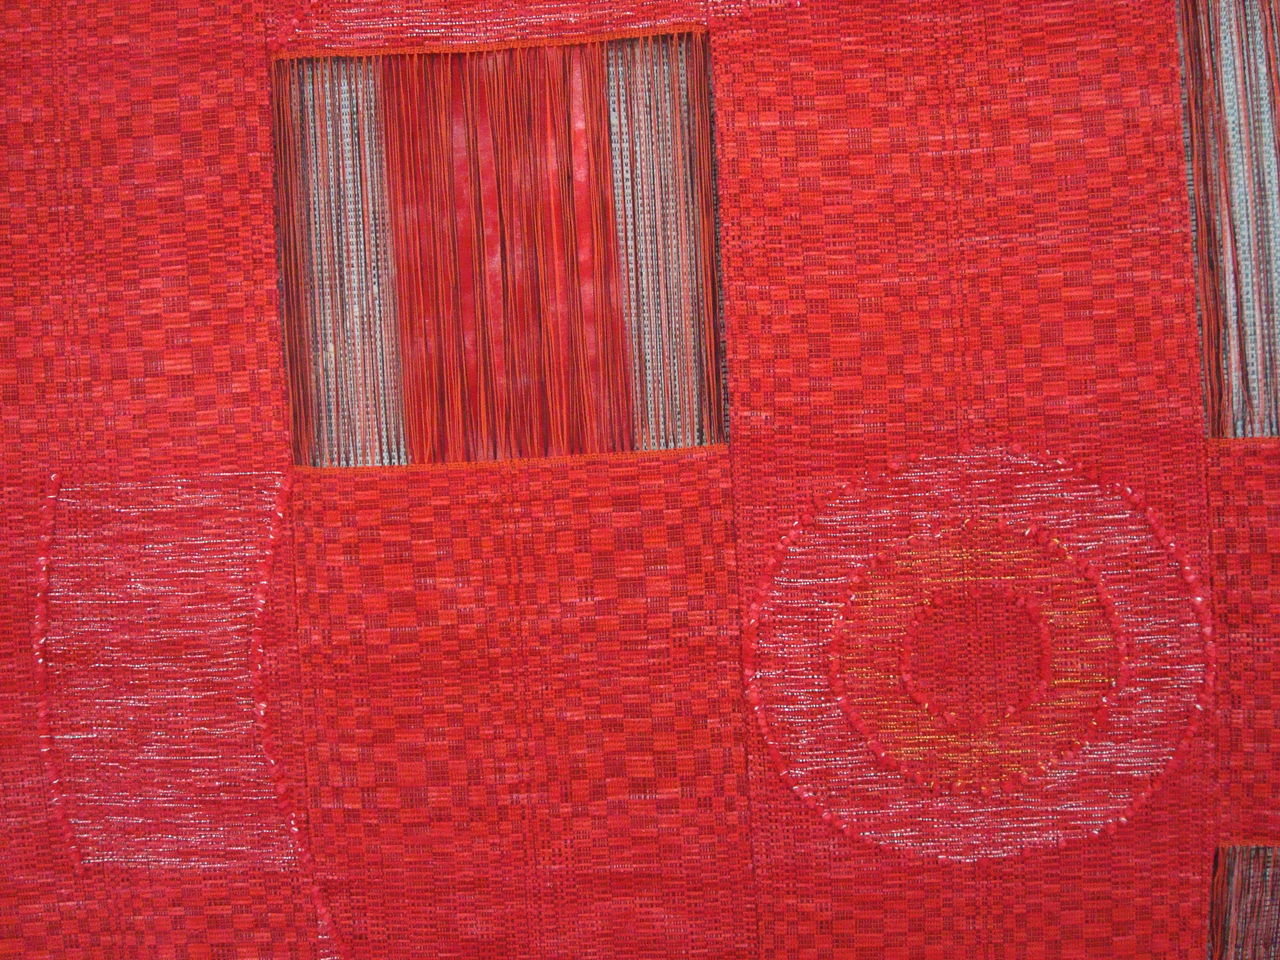 日本ショップ 裂織りマット 特大 博物館展示品 貴重 雑貨